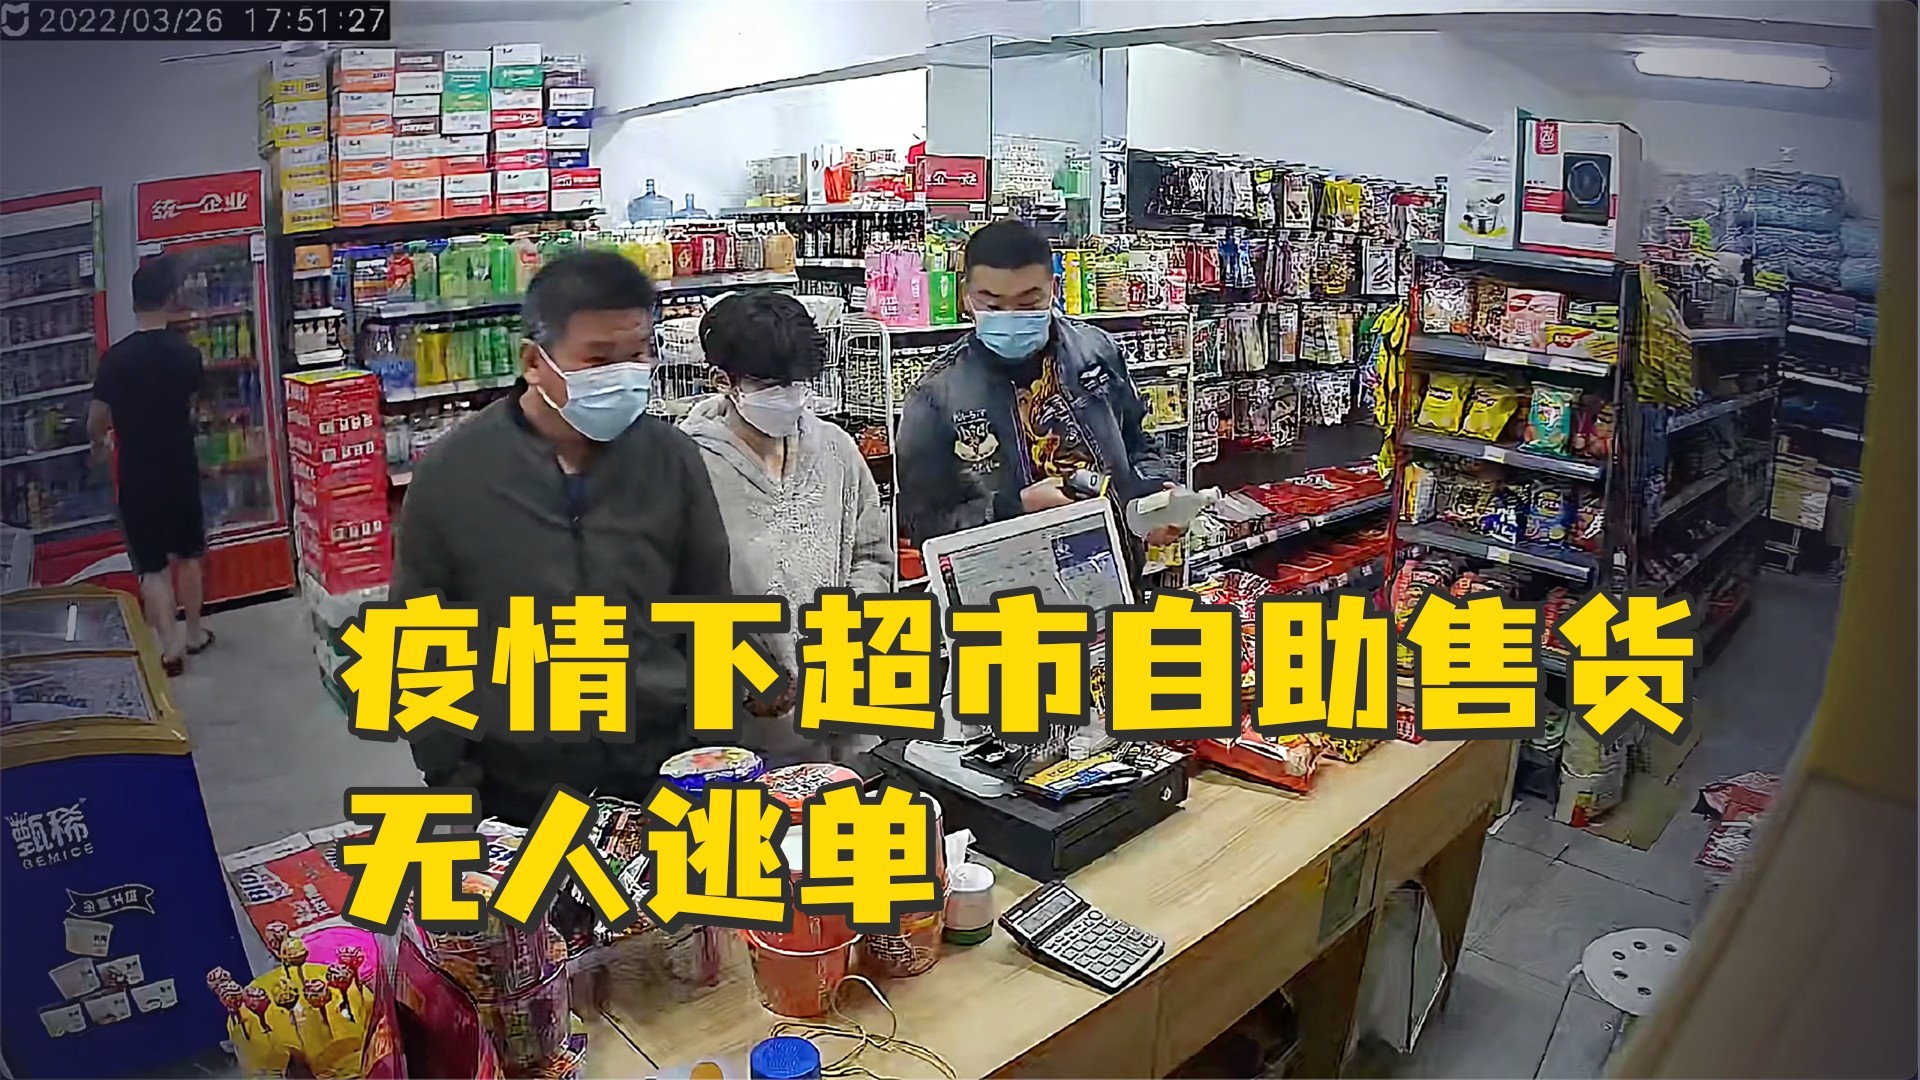 福清市“超市老板娘”因其善行 视频获百万阅读量 - 本网原创 - 东南网